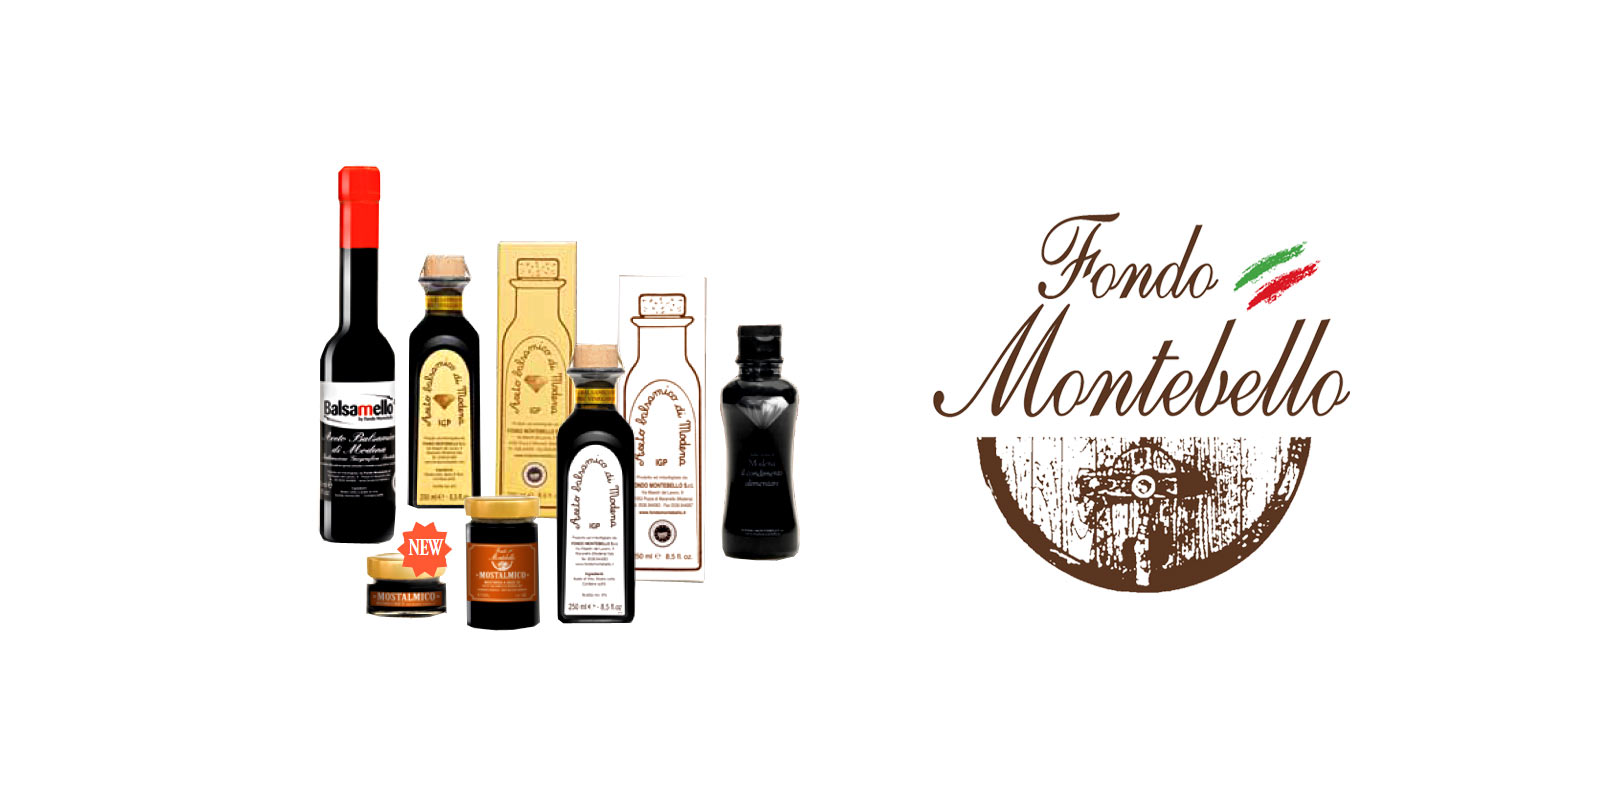 Aceto Balsamico Fondo Montebello Fondo Montebello tuottaa vanhoja ja perinteisia tuotantomenetelmia erinomaisen balsamiviinietikan Maranellon alueelta Italiasta.